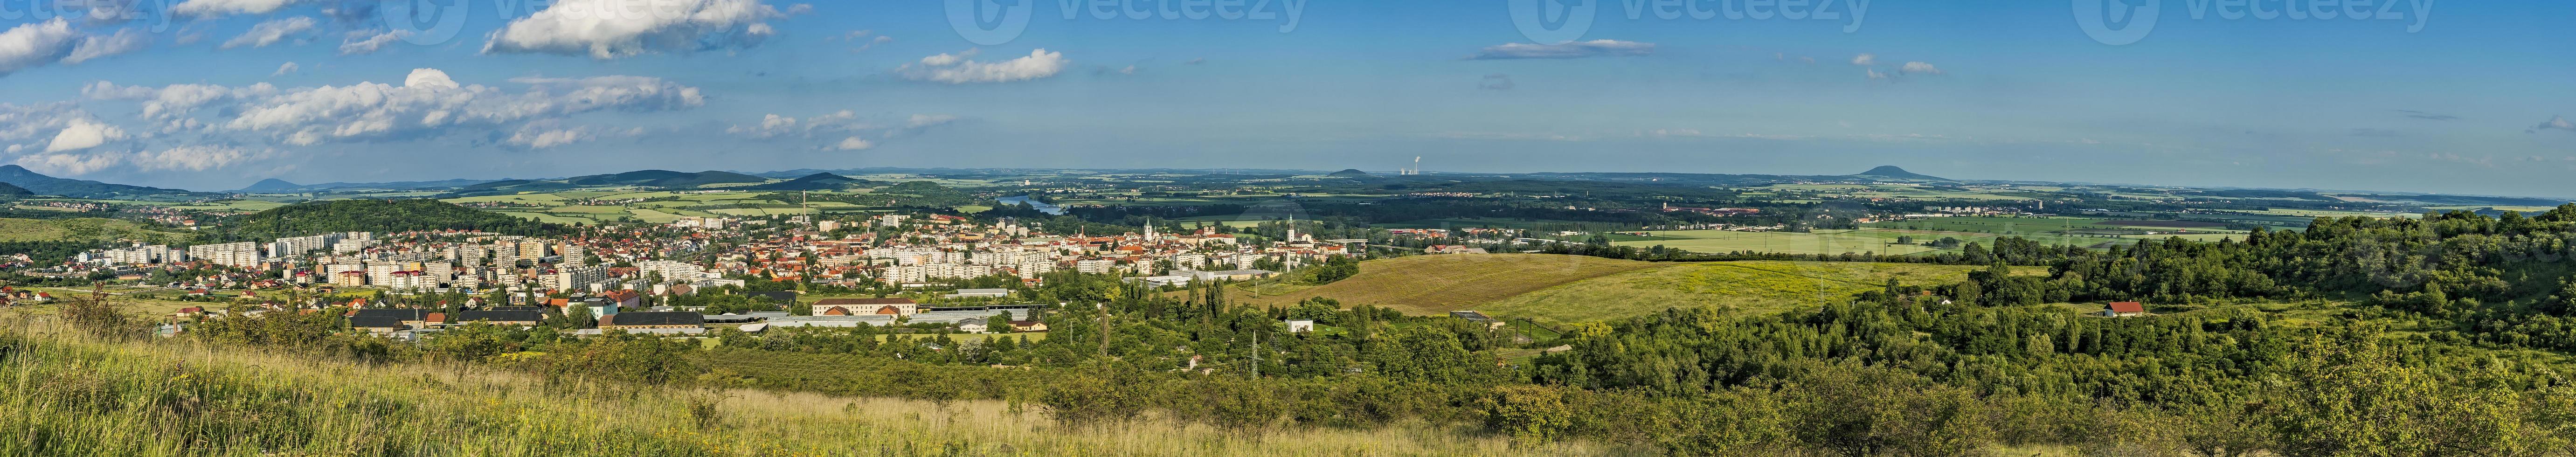 paysage urbain litomerice république tchèque photo